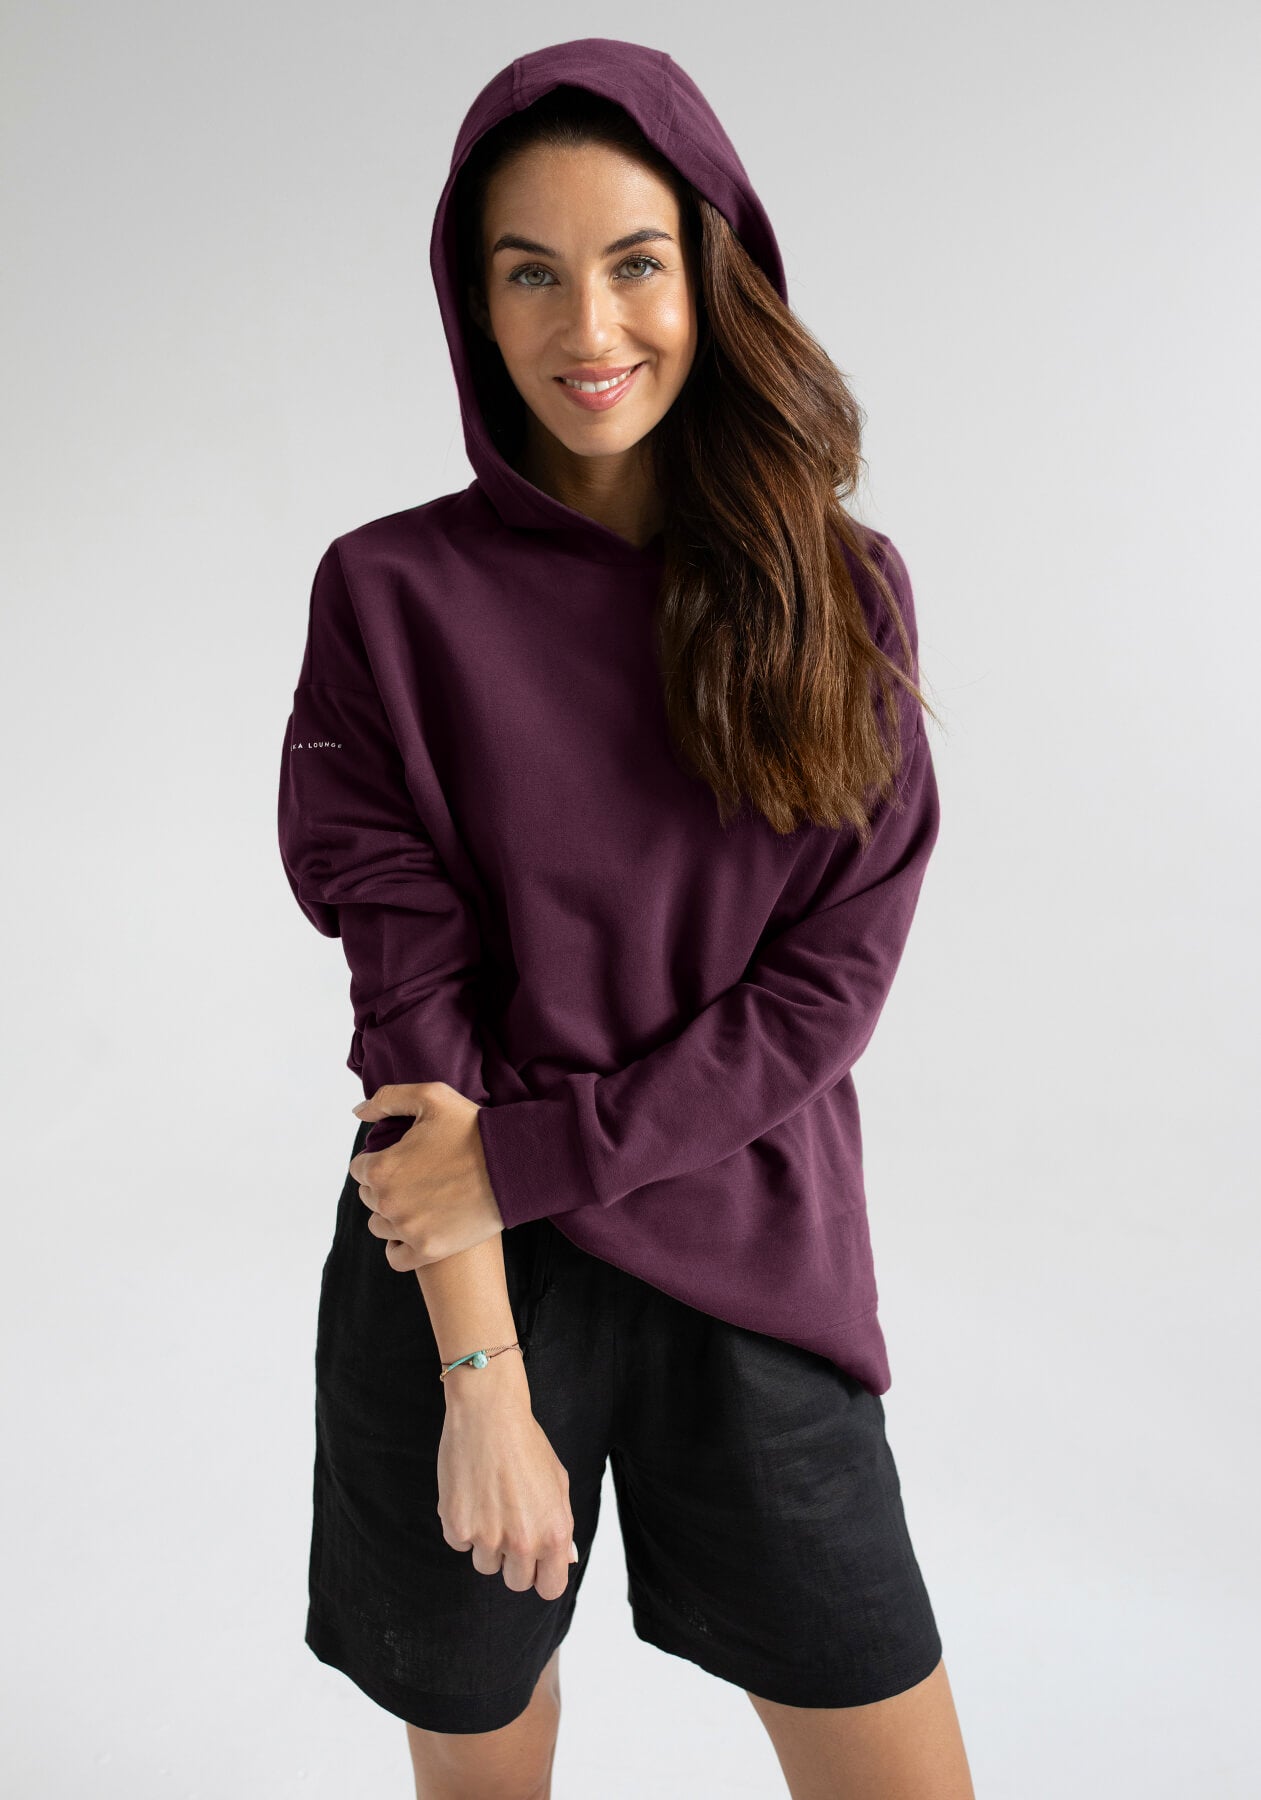 Women bluza bawełna organiczna Purple - Oversized